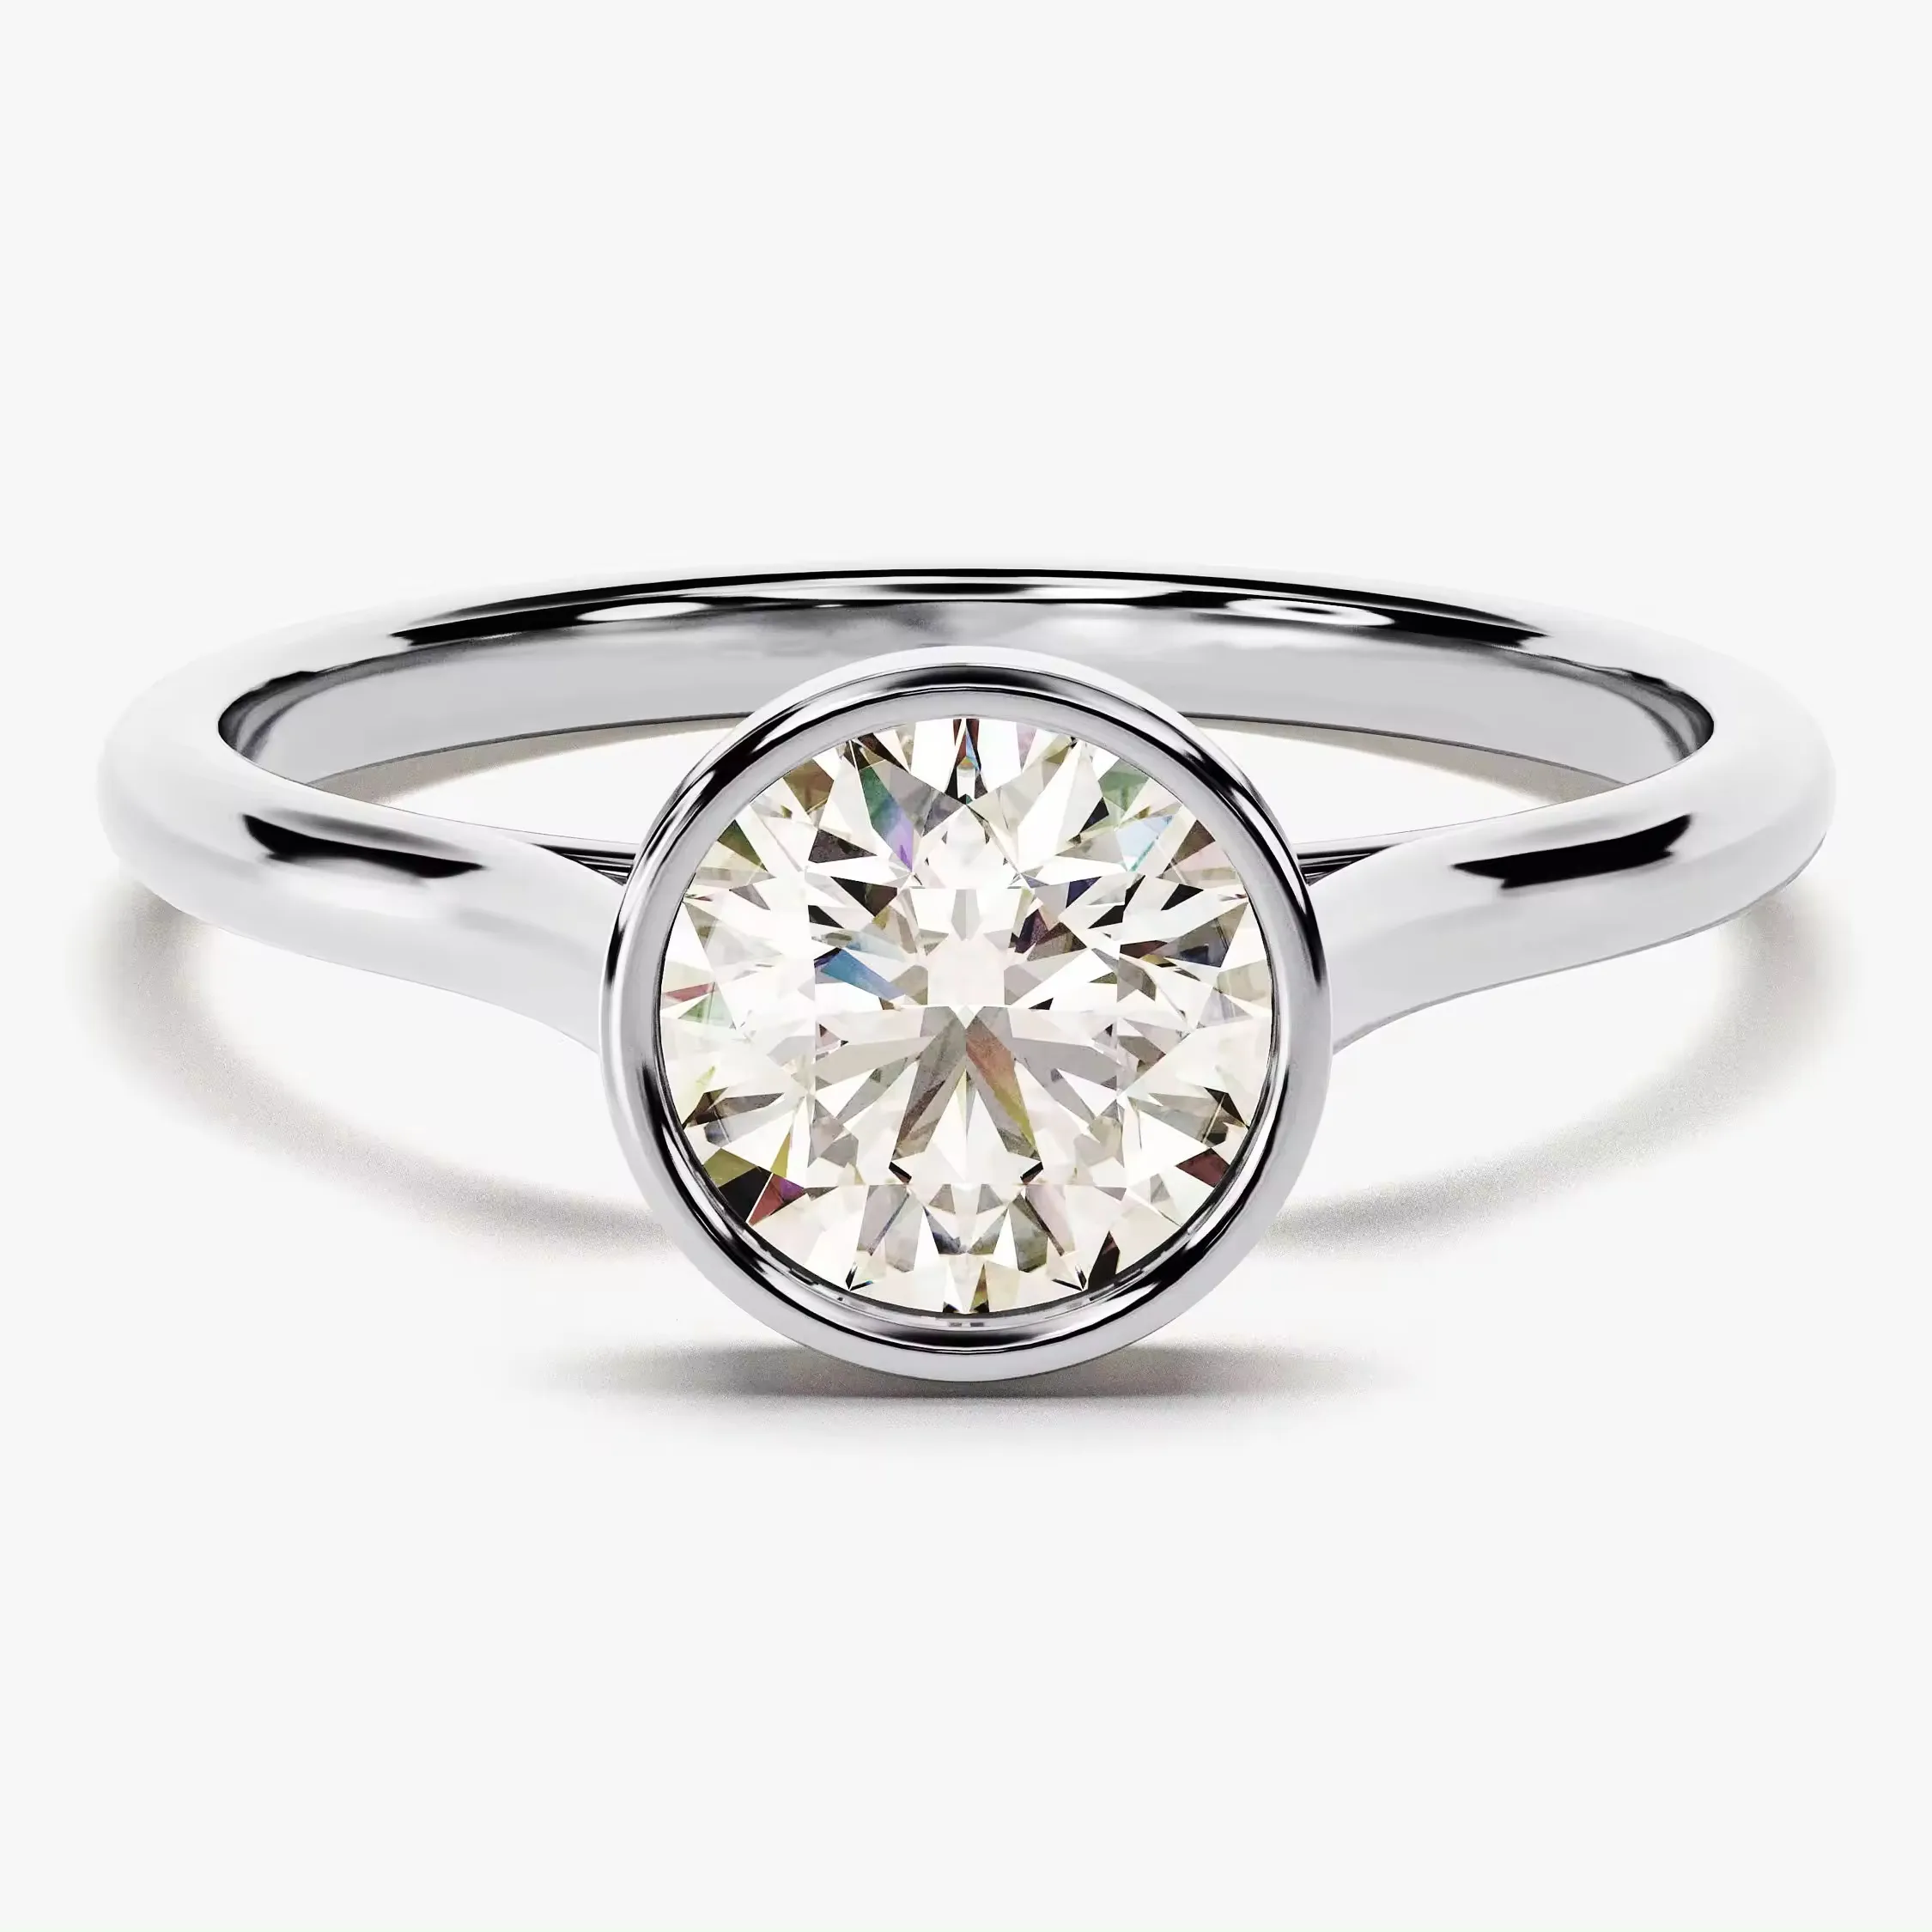 Bezel Belofte Ring Verlovingsdiamanten Ring Rond 14K 18K Goud 1 Ct Solitaire Diamanten Ring